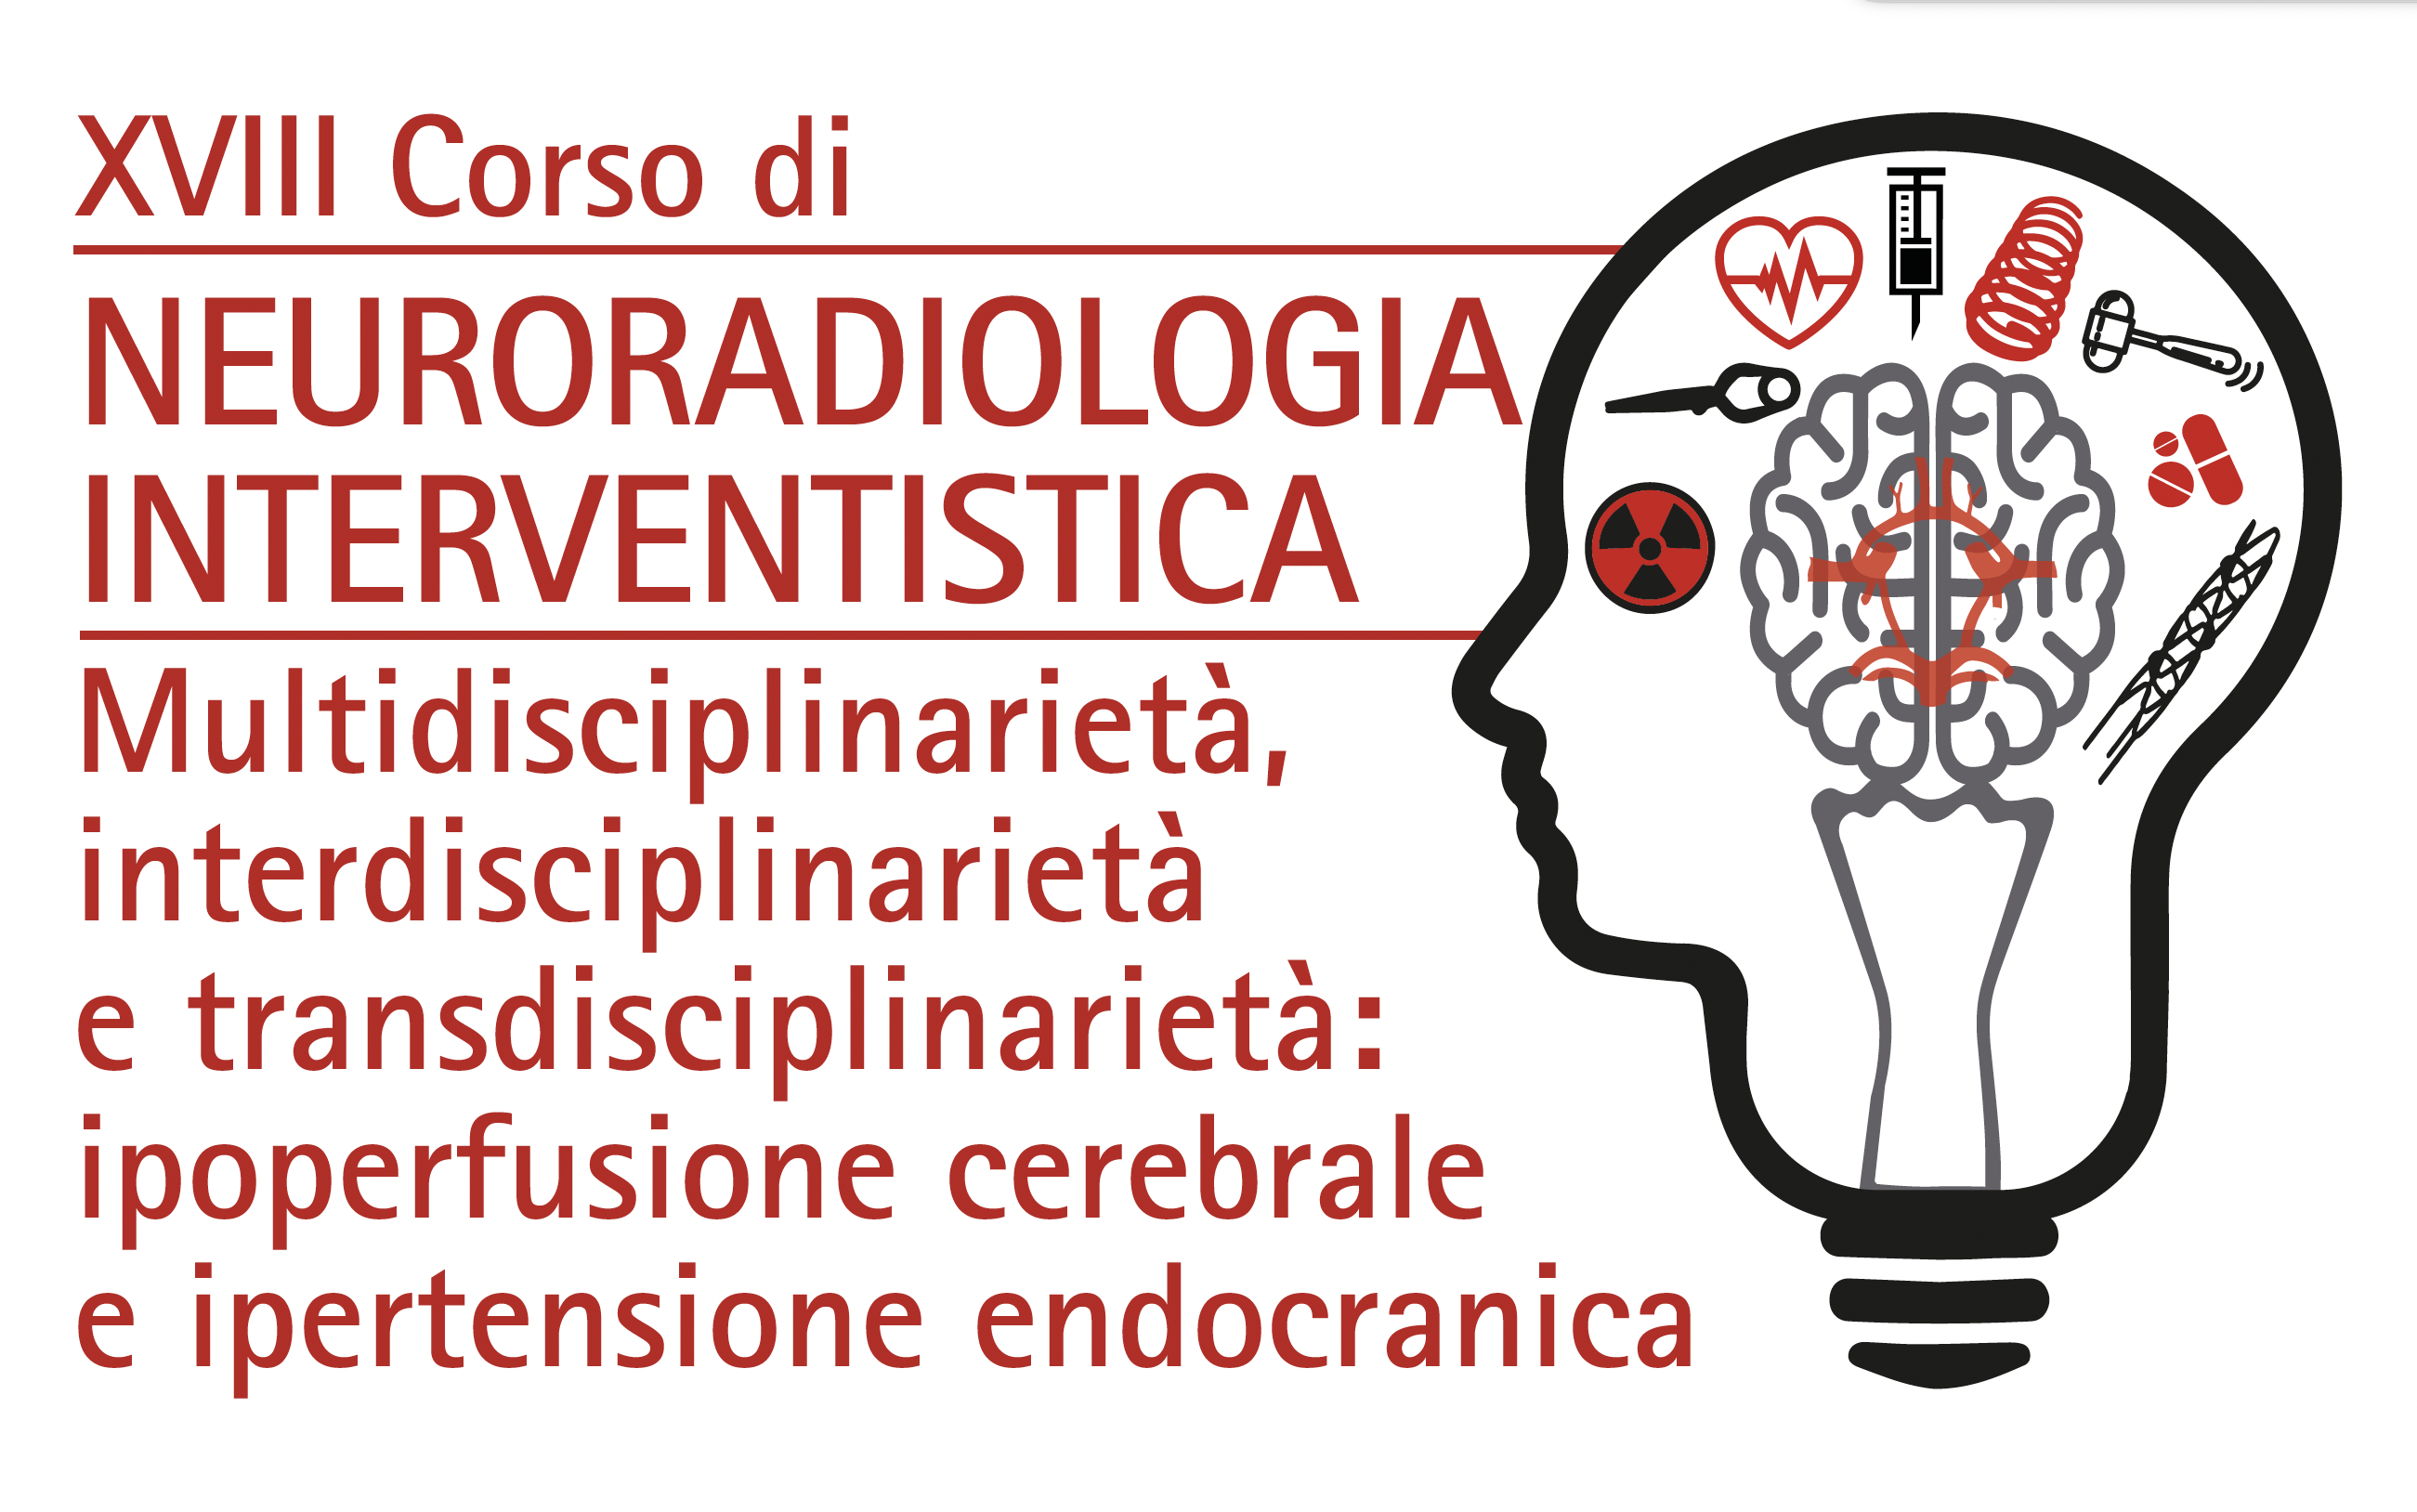 Neuroradiologia Interventistica - Multidisciplinarietà, interdisciplinarietà e transdisciplinarietà: ipoperfusione cerebrale e ipertensione endocranica